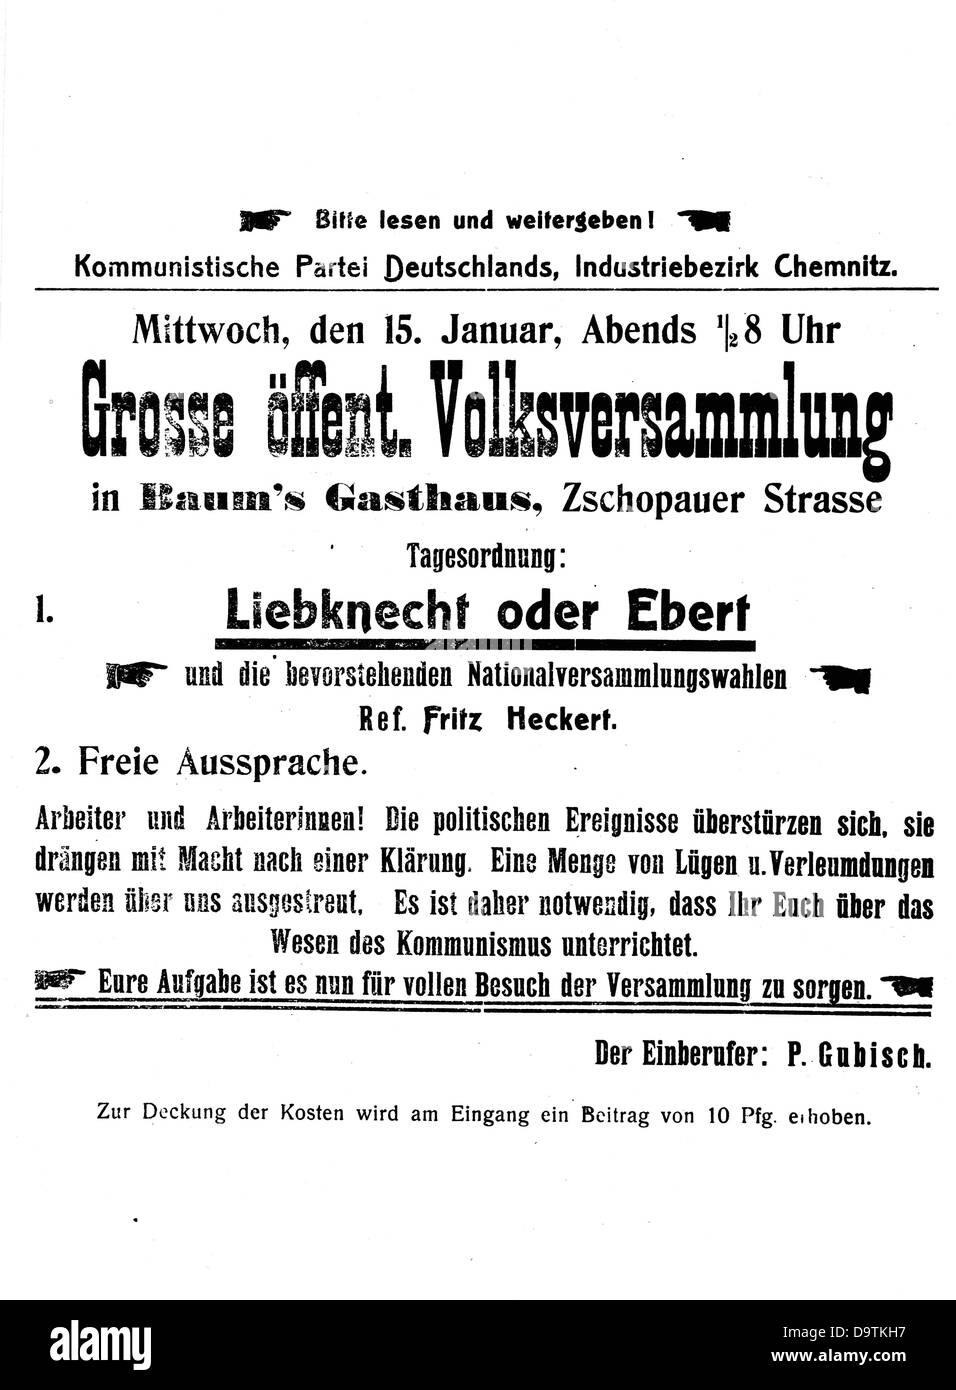 Invito del Partito Comunista di Germania (KPD) a una riunione pubblica il 15 gennaio 1919 sull'ocassion dell'imminente elezione dell'assemblea nazionale tedesca a Chemnitz, in Germania. La stessa sera, i membri fondatori del KPD, Rosa Luxemburg e Karl Liebknecht, sono stati assassinati a Berlino, in Germania. Fotoarchiv für Zeitgeschichte Foto Stock